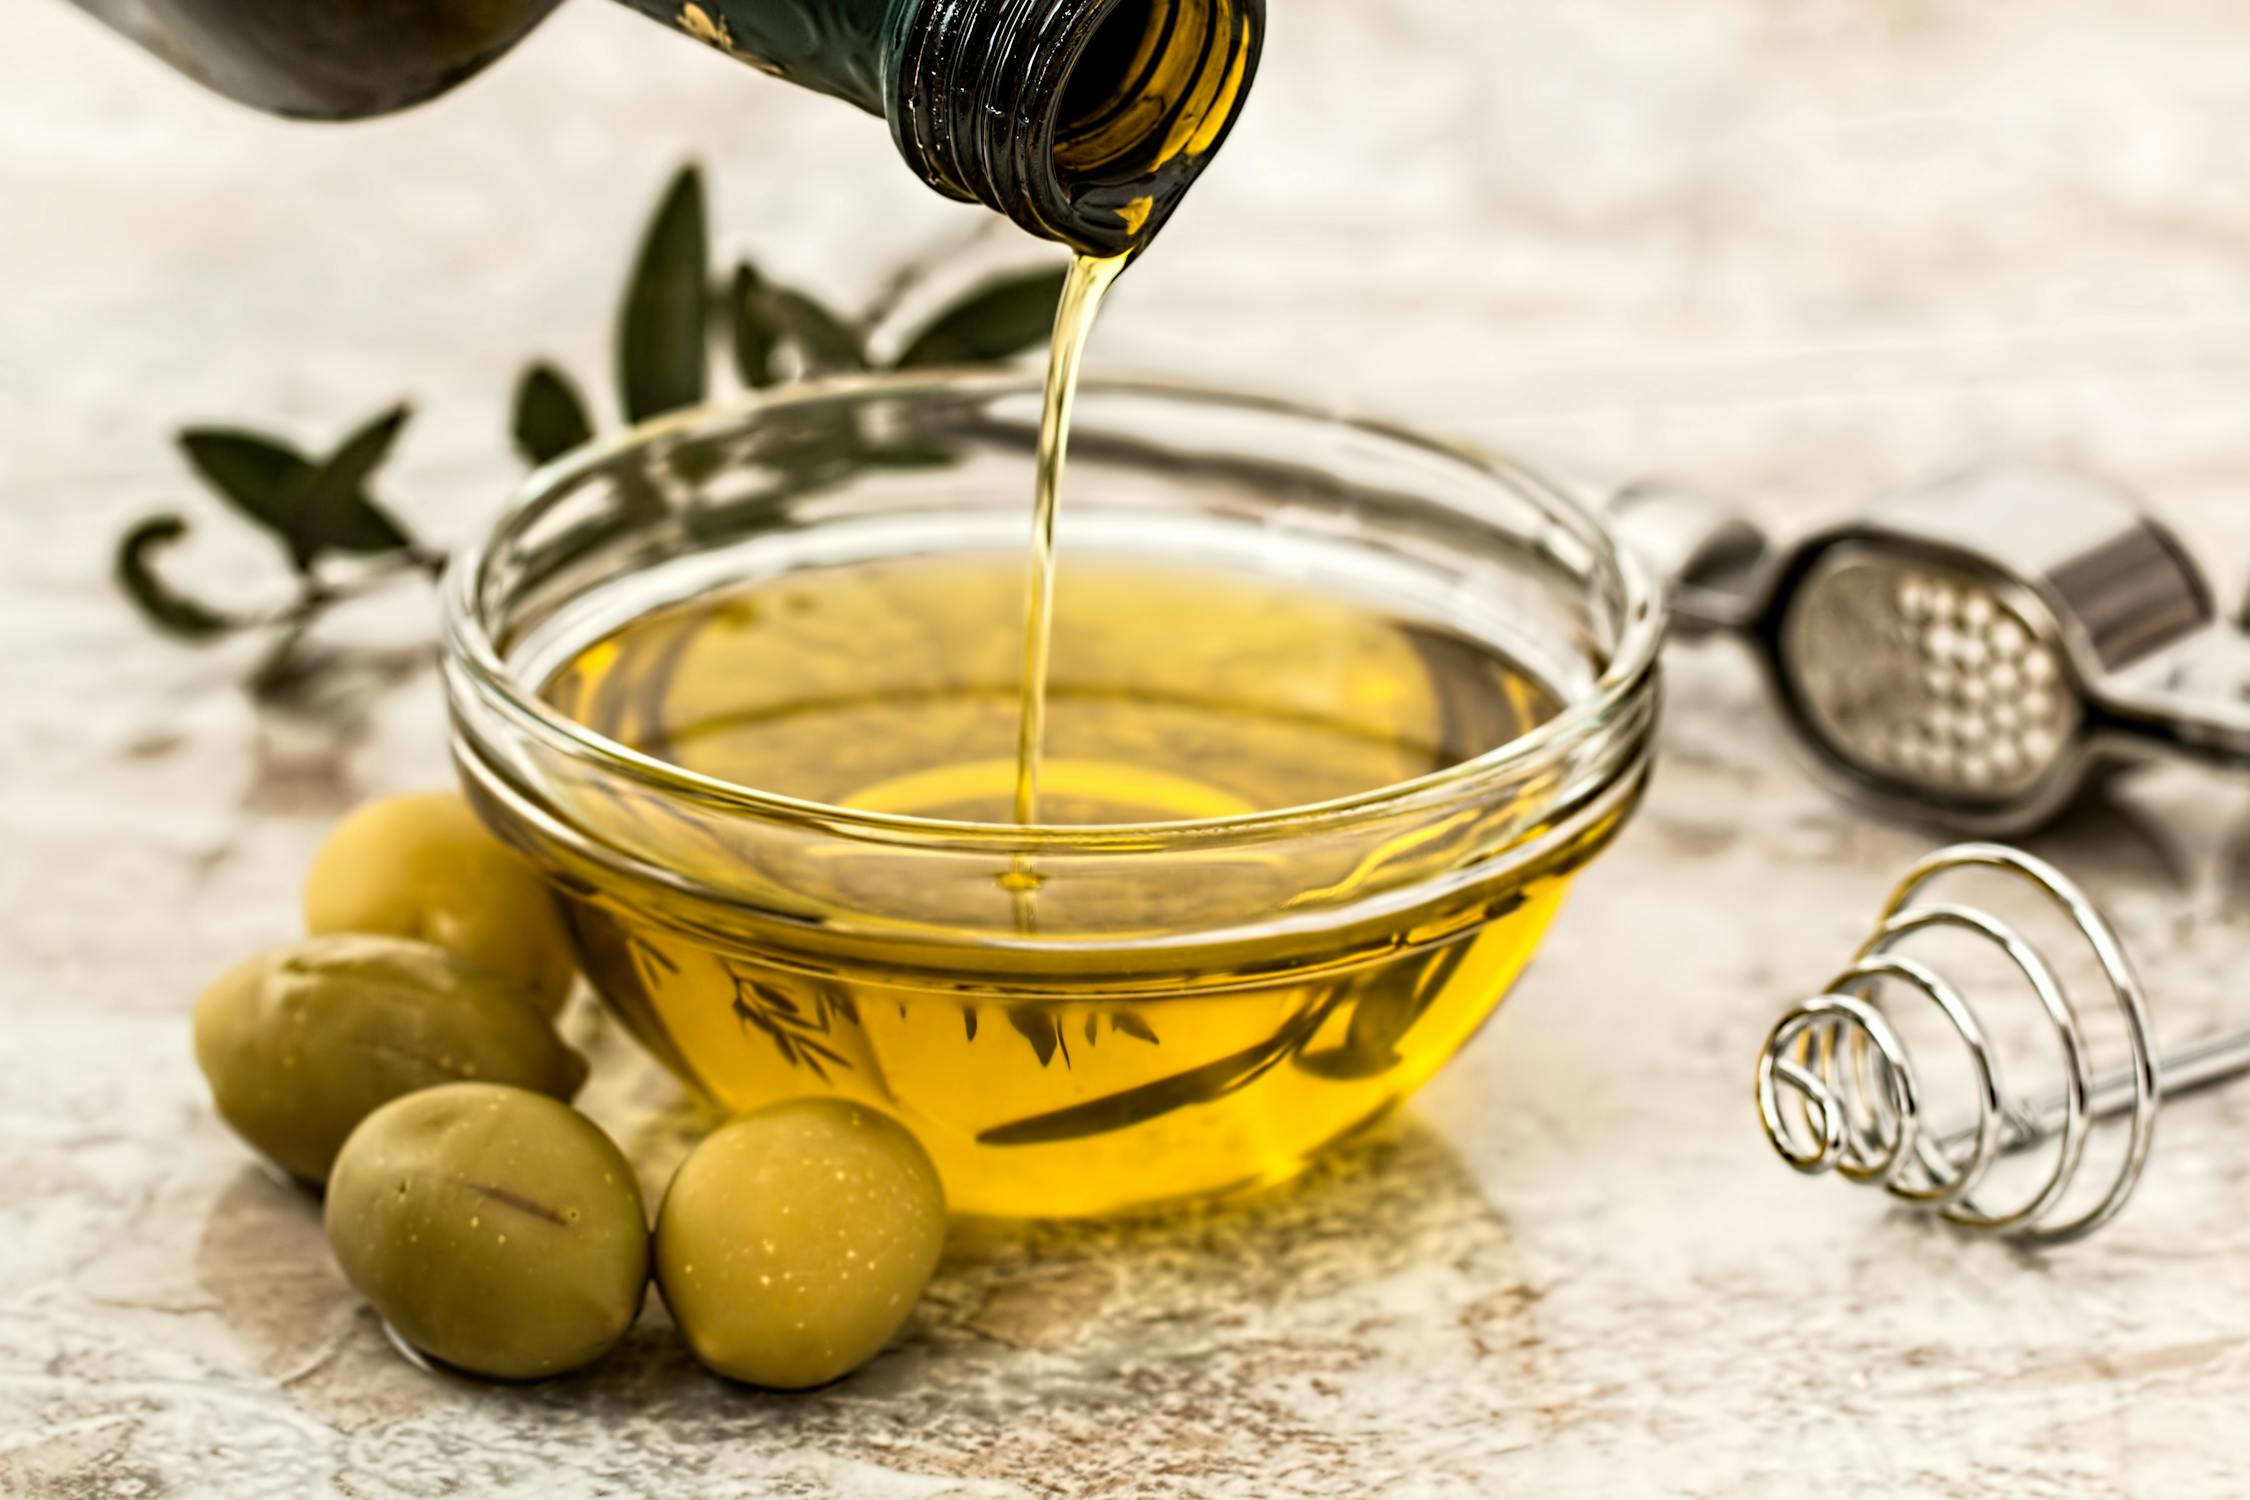 olive oil salad dressing cooking olive